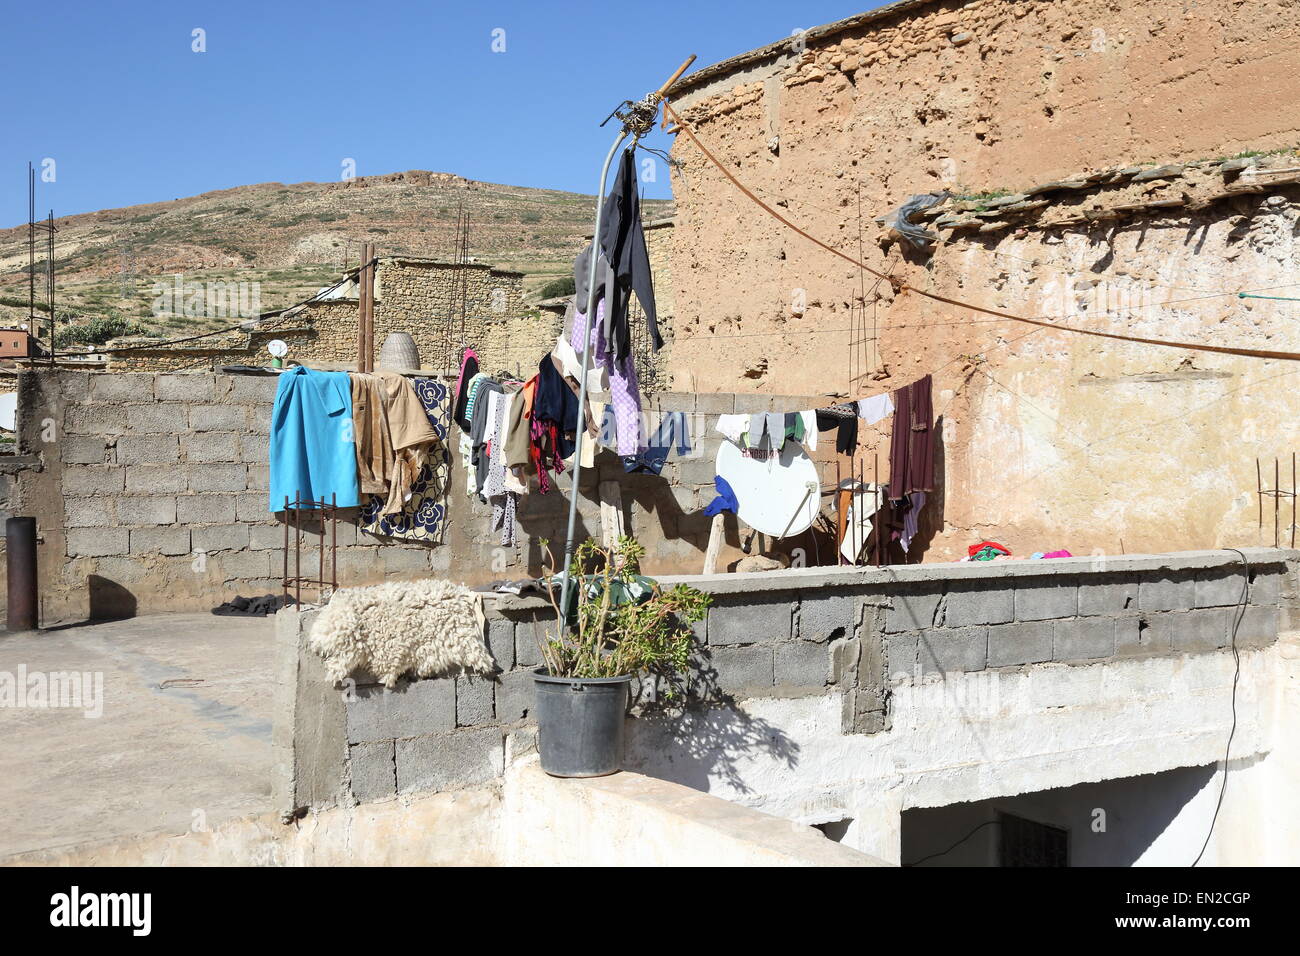 Lave-tomber à l'intérieur d'une maison berbère dans le village de Sidi Hassain dans les montagnes du Haut Atlas, au Maroc. Banque D'Images